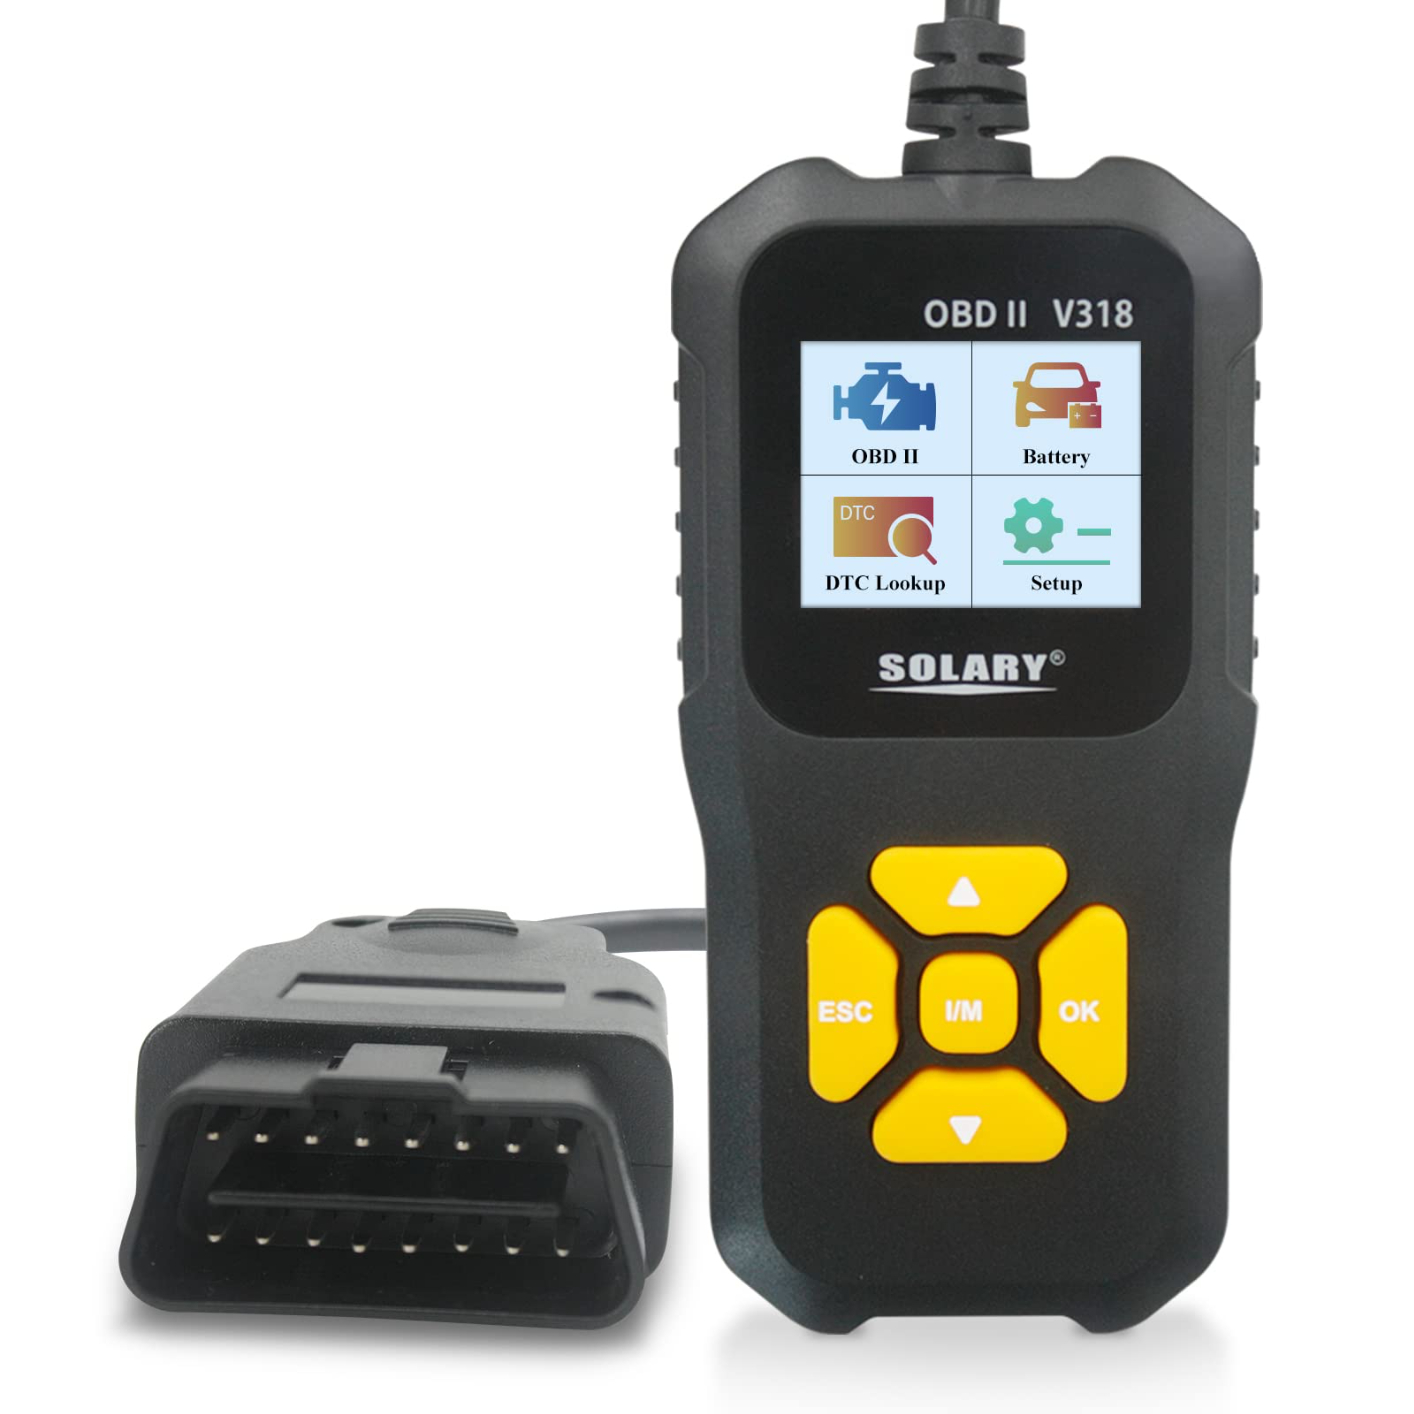 Solary Car OBD2 Scanner Code Reader, V318 OBD2 Scanner Check Engine Light Scan Tool, Professional Diagnostic Scaner for All OBD II Protocol Cars